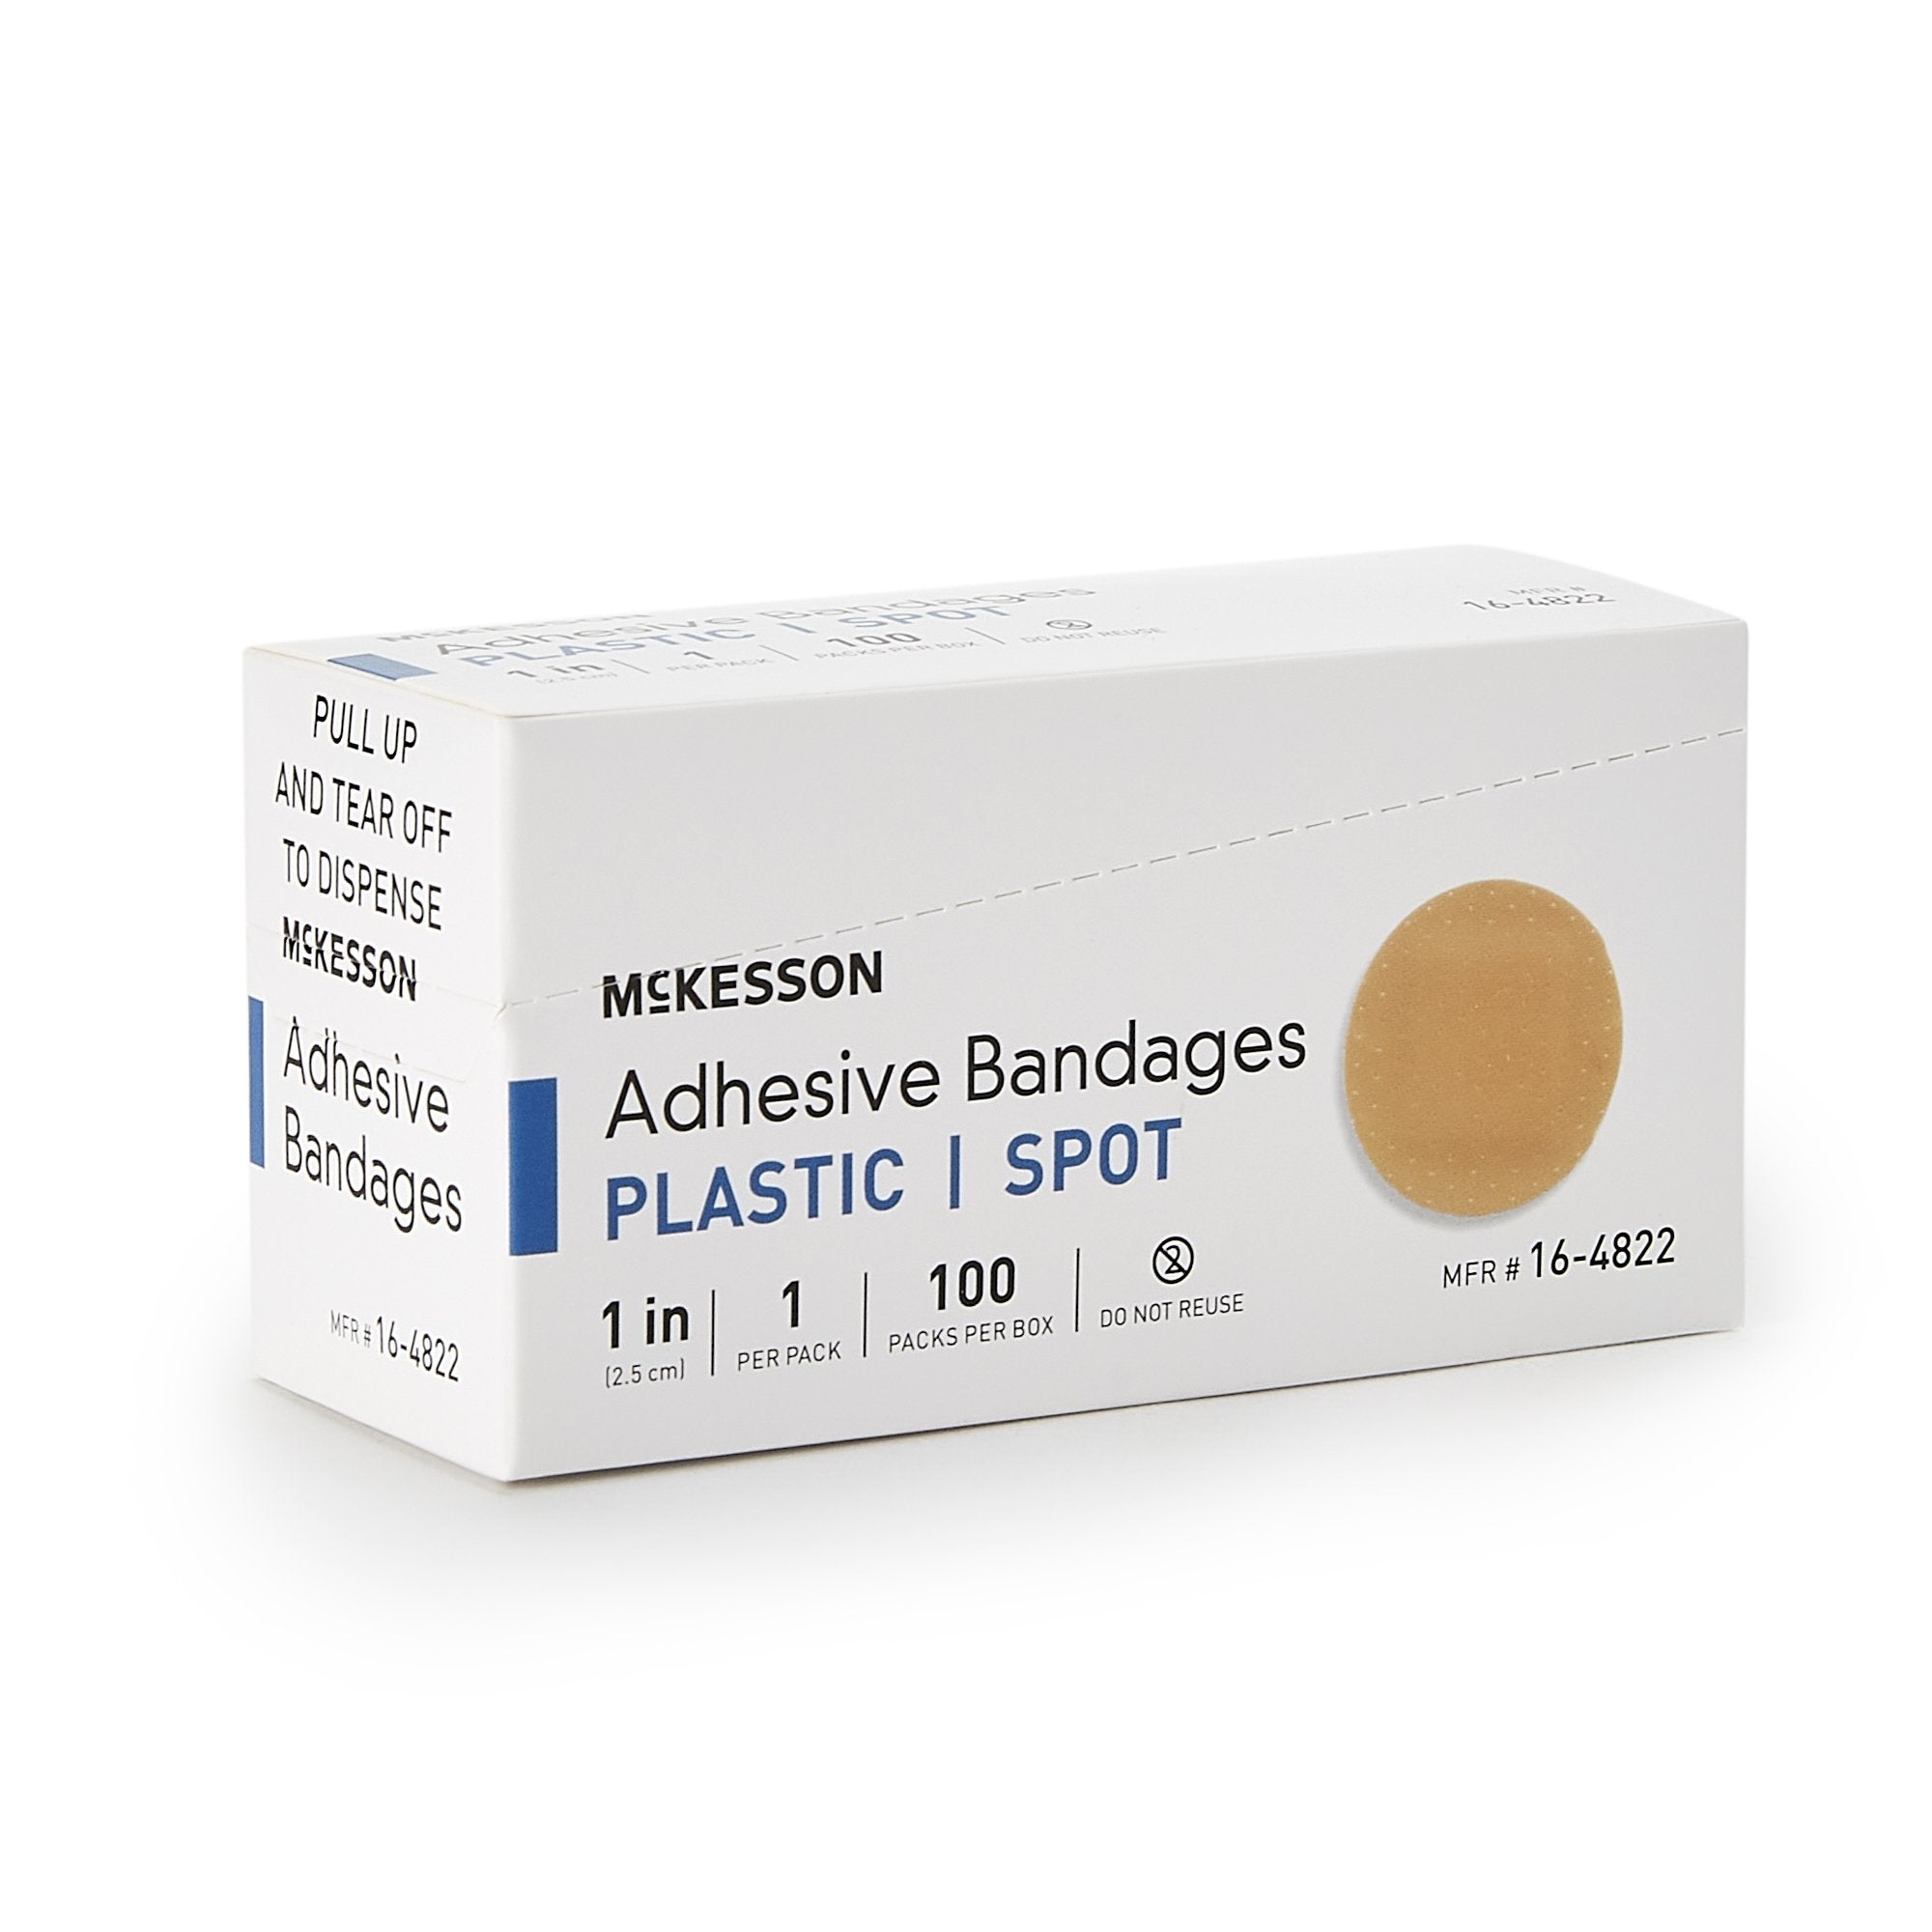 Adhesive Spot Bandage McKesson 1 Inch Plastic Round Tan Sterile